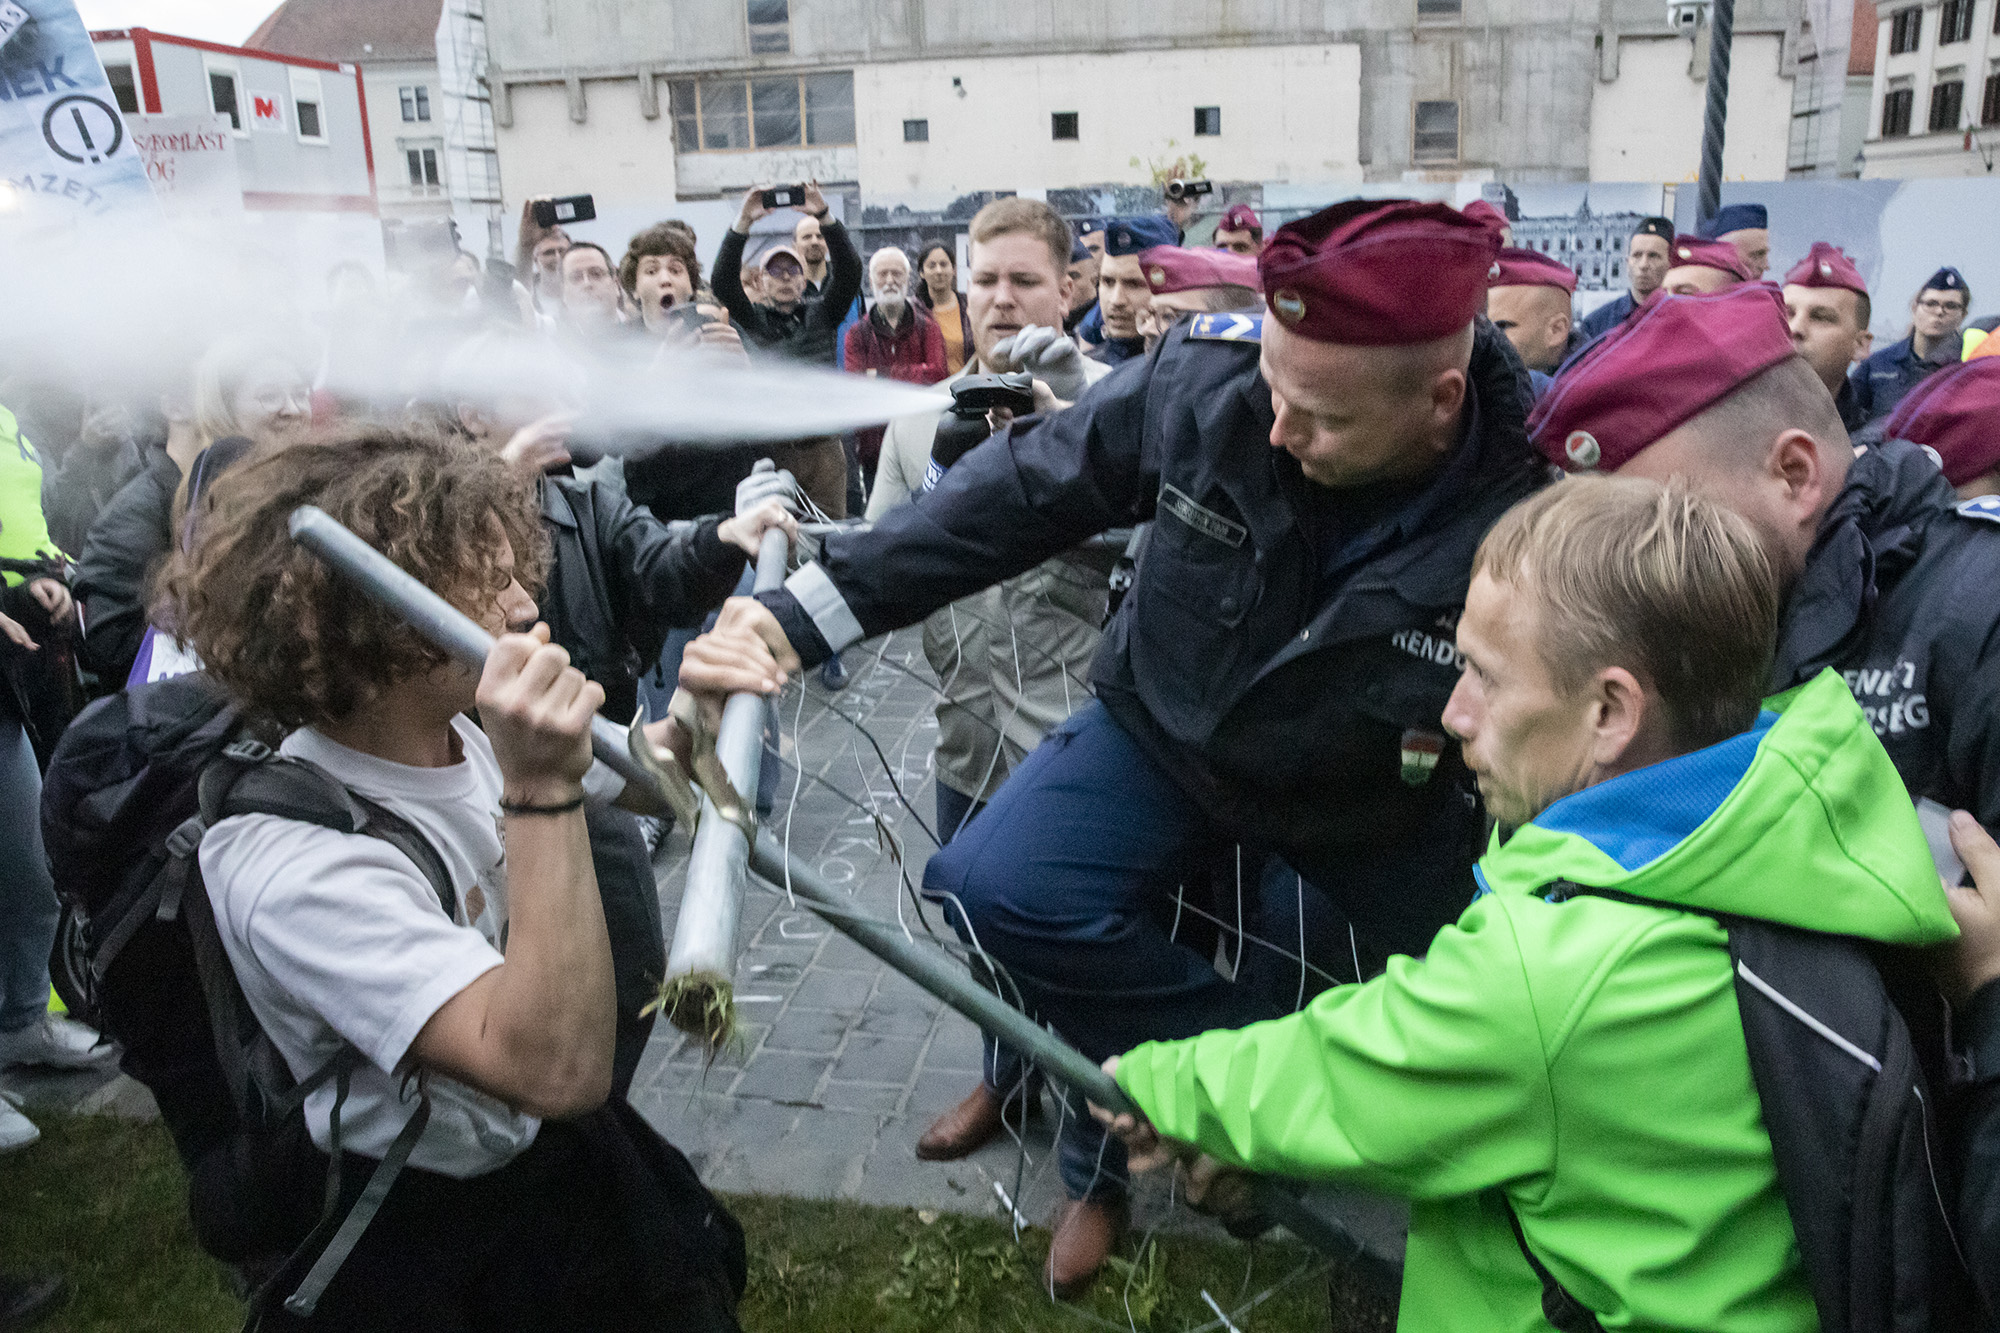 A Belügyminisztérium előtti ülősztrájkkal kezdődött, Orbán munkahelyénél kifújt rendőri gázspray-vel végződött a tüntetés a tanárokért